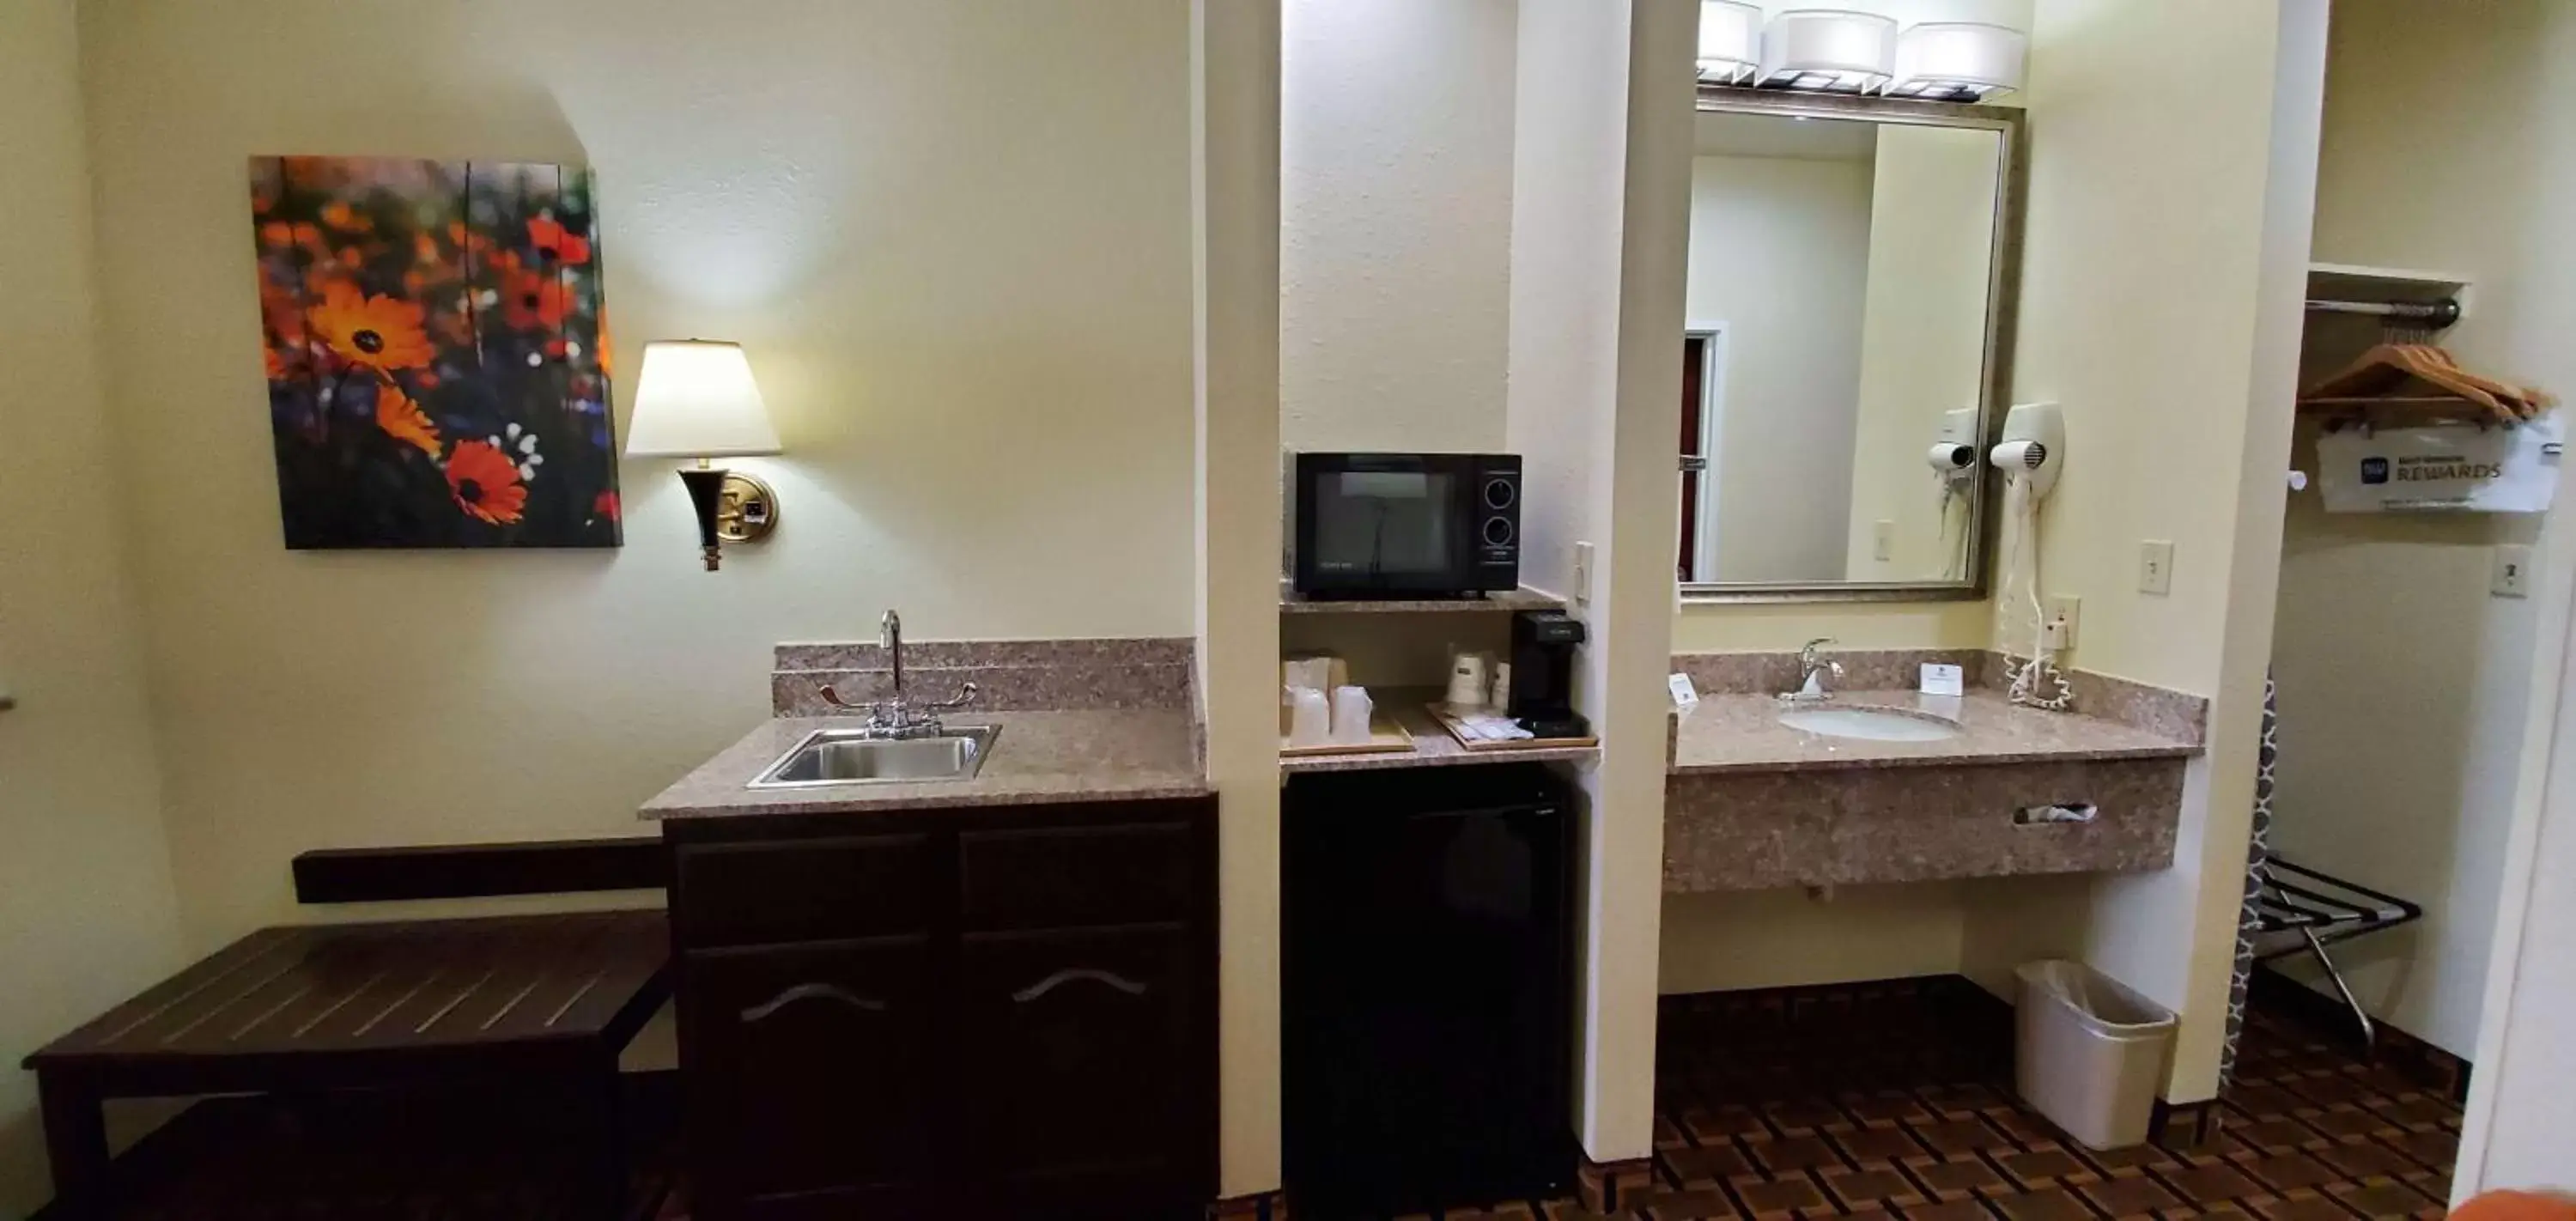 Bathroom in Best Western Executive Inn & Suites